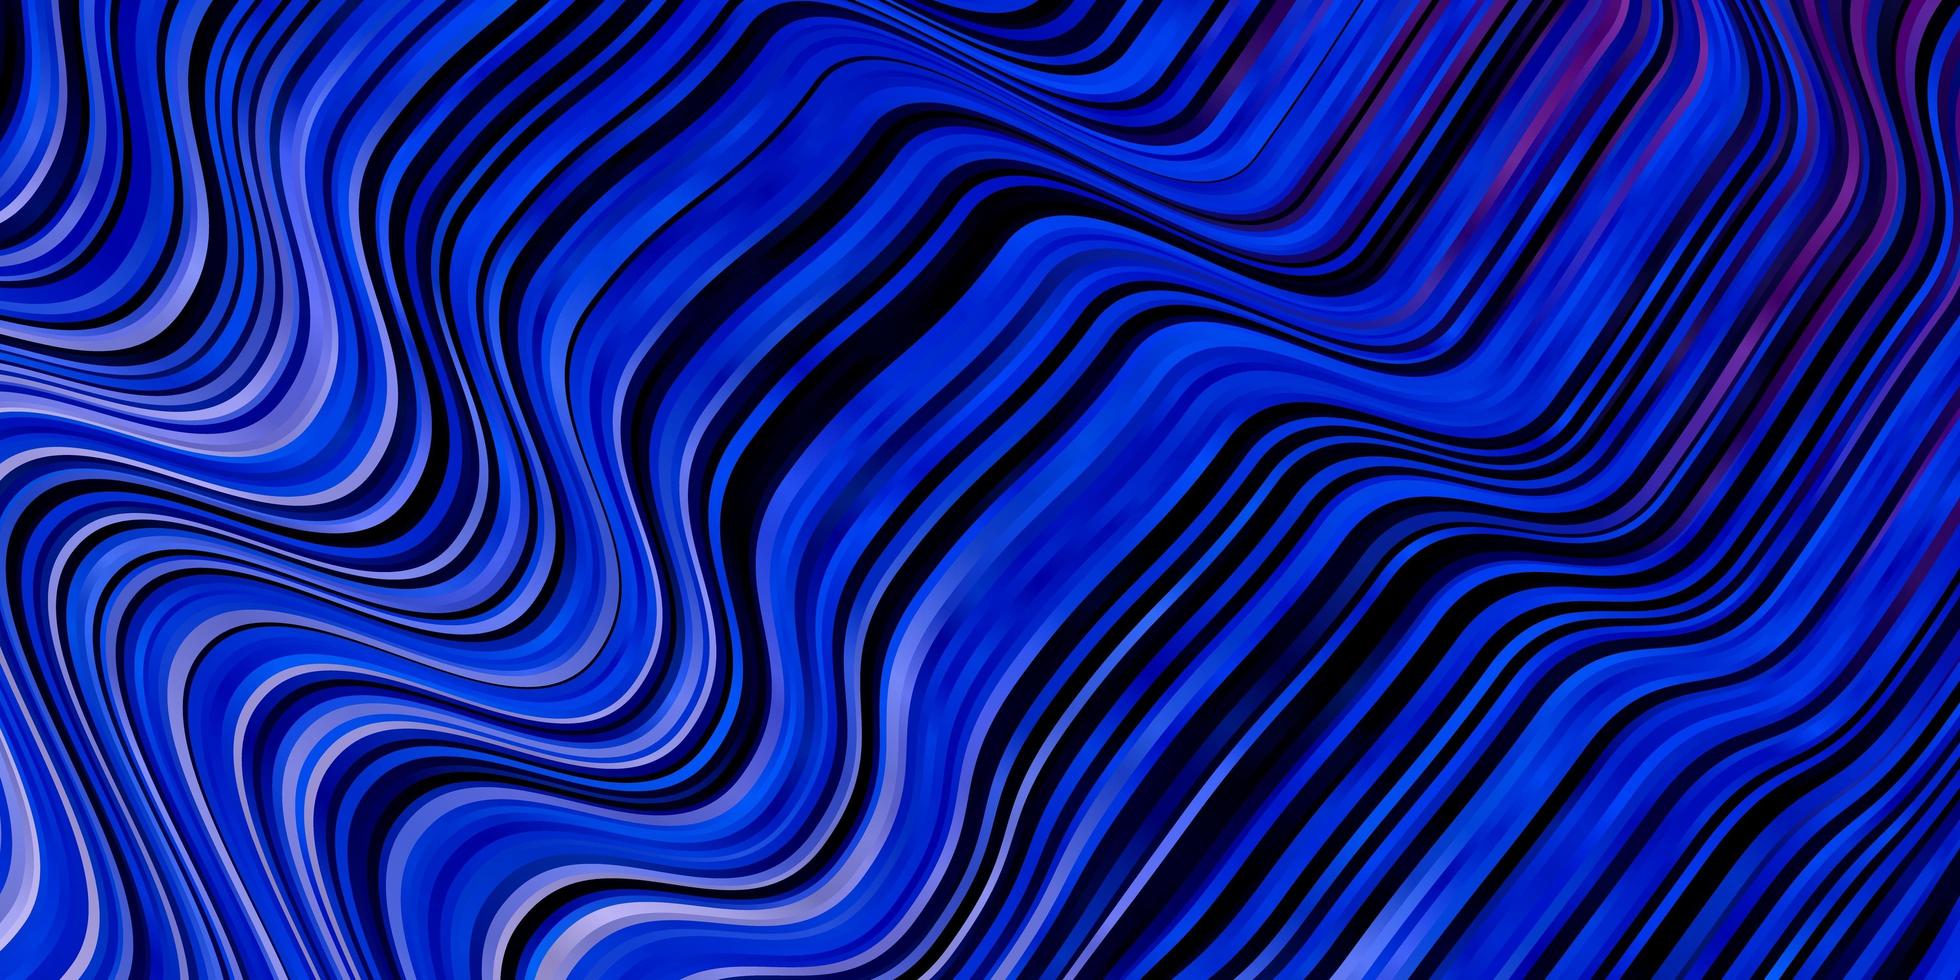 mörkrosa, blå vektormönster med linjer. vektor